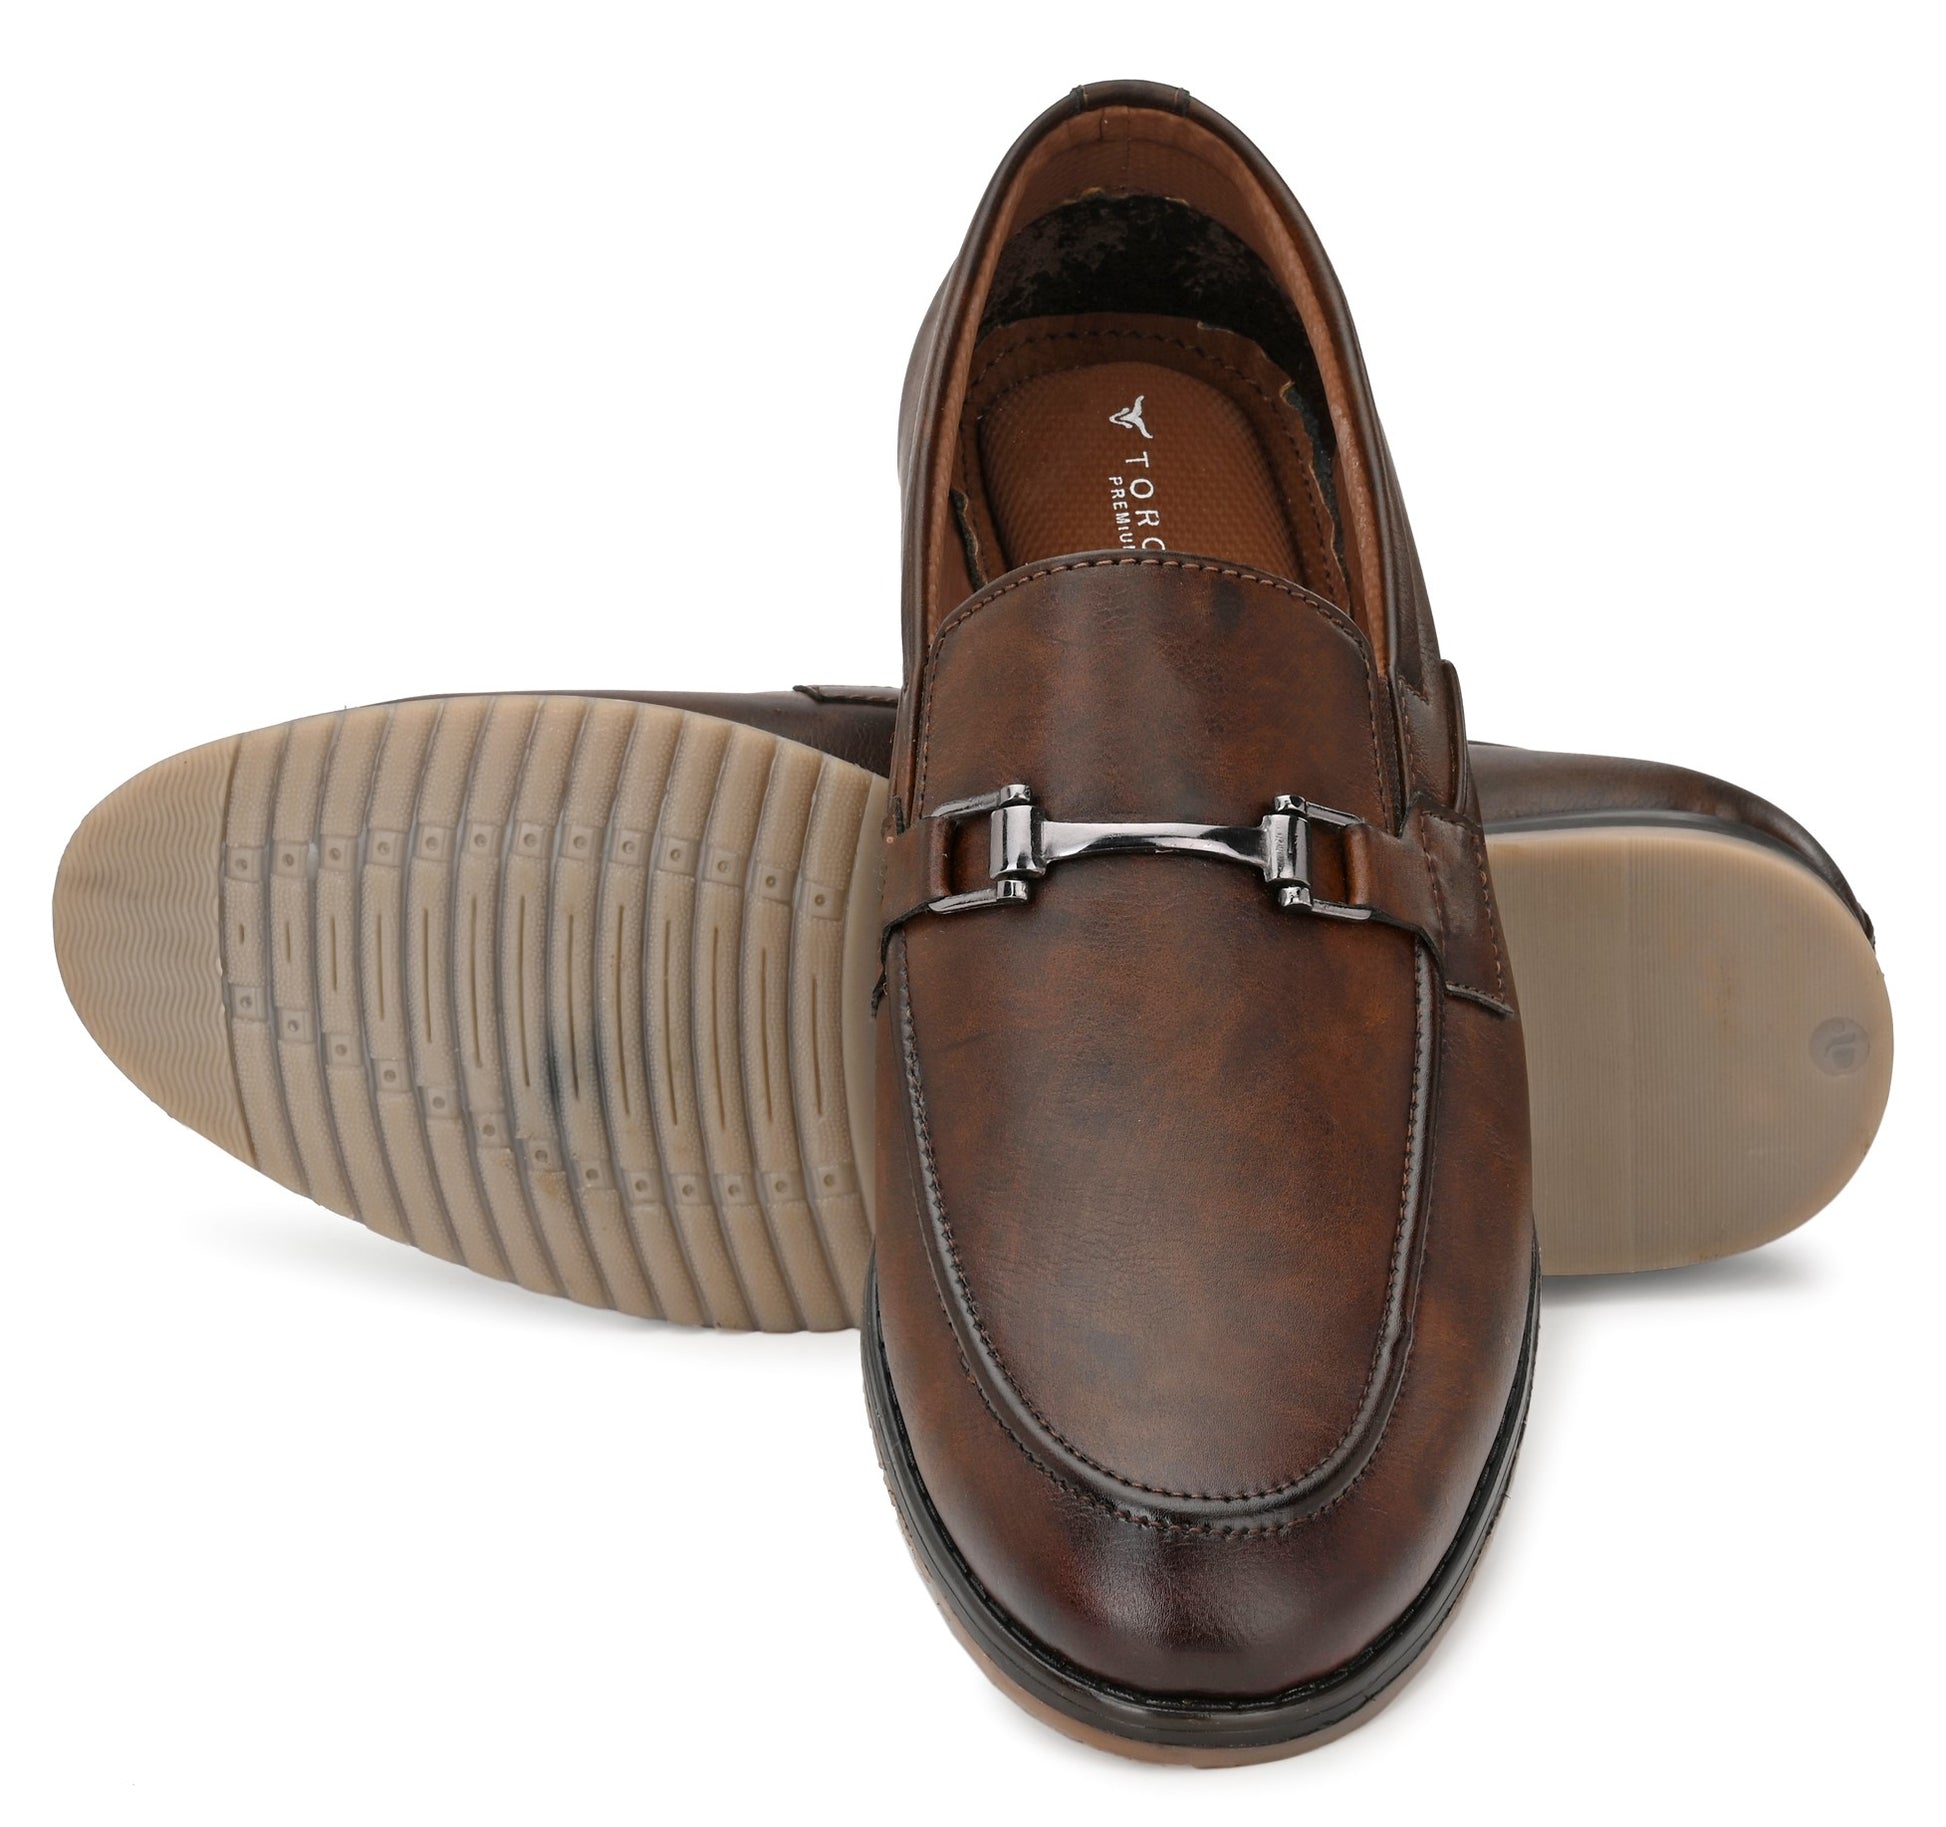 HNR Corporation Toro Blu Men's Formal Slip on Moccasin Loafer Shoes HNR Corporation 849.00 Toro Blu  Toro Blu Men's Formal Slip on Moccasin Loafer Shoes